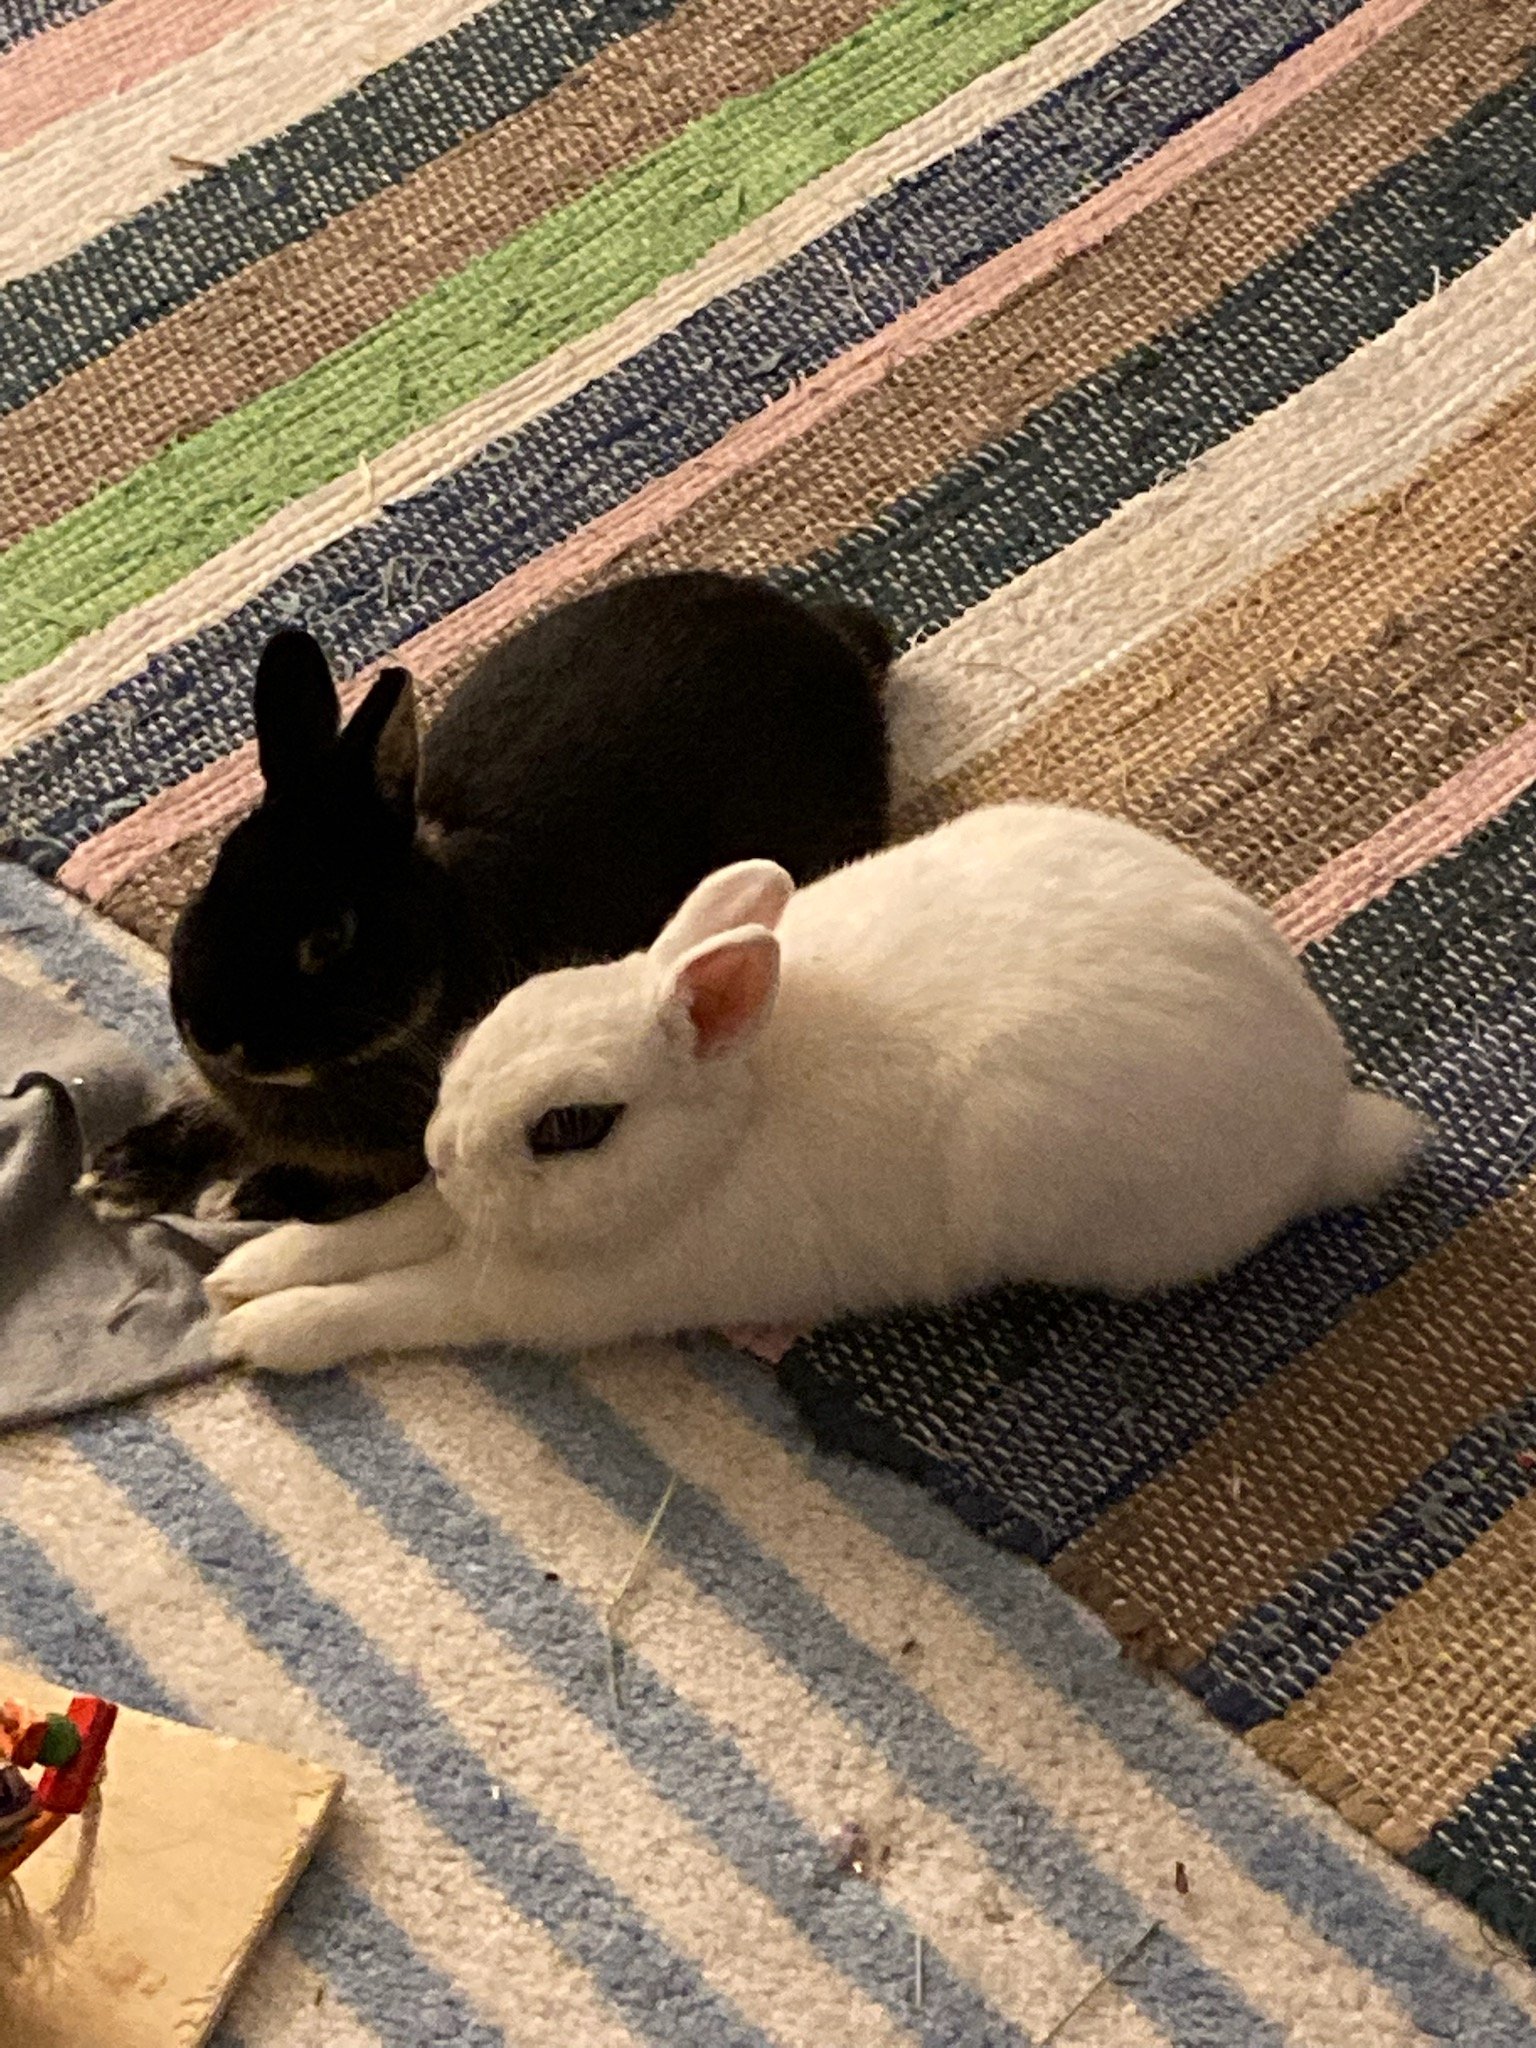 Clemmy and Peepo, Mason's Rabbits